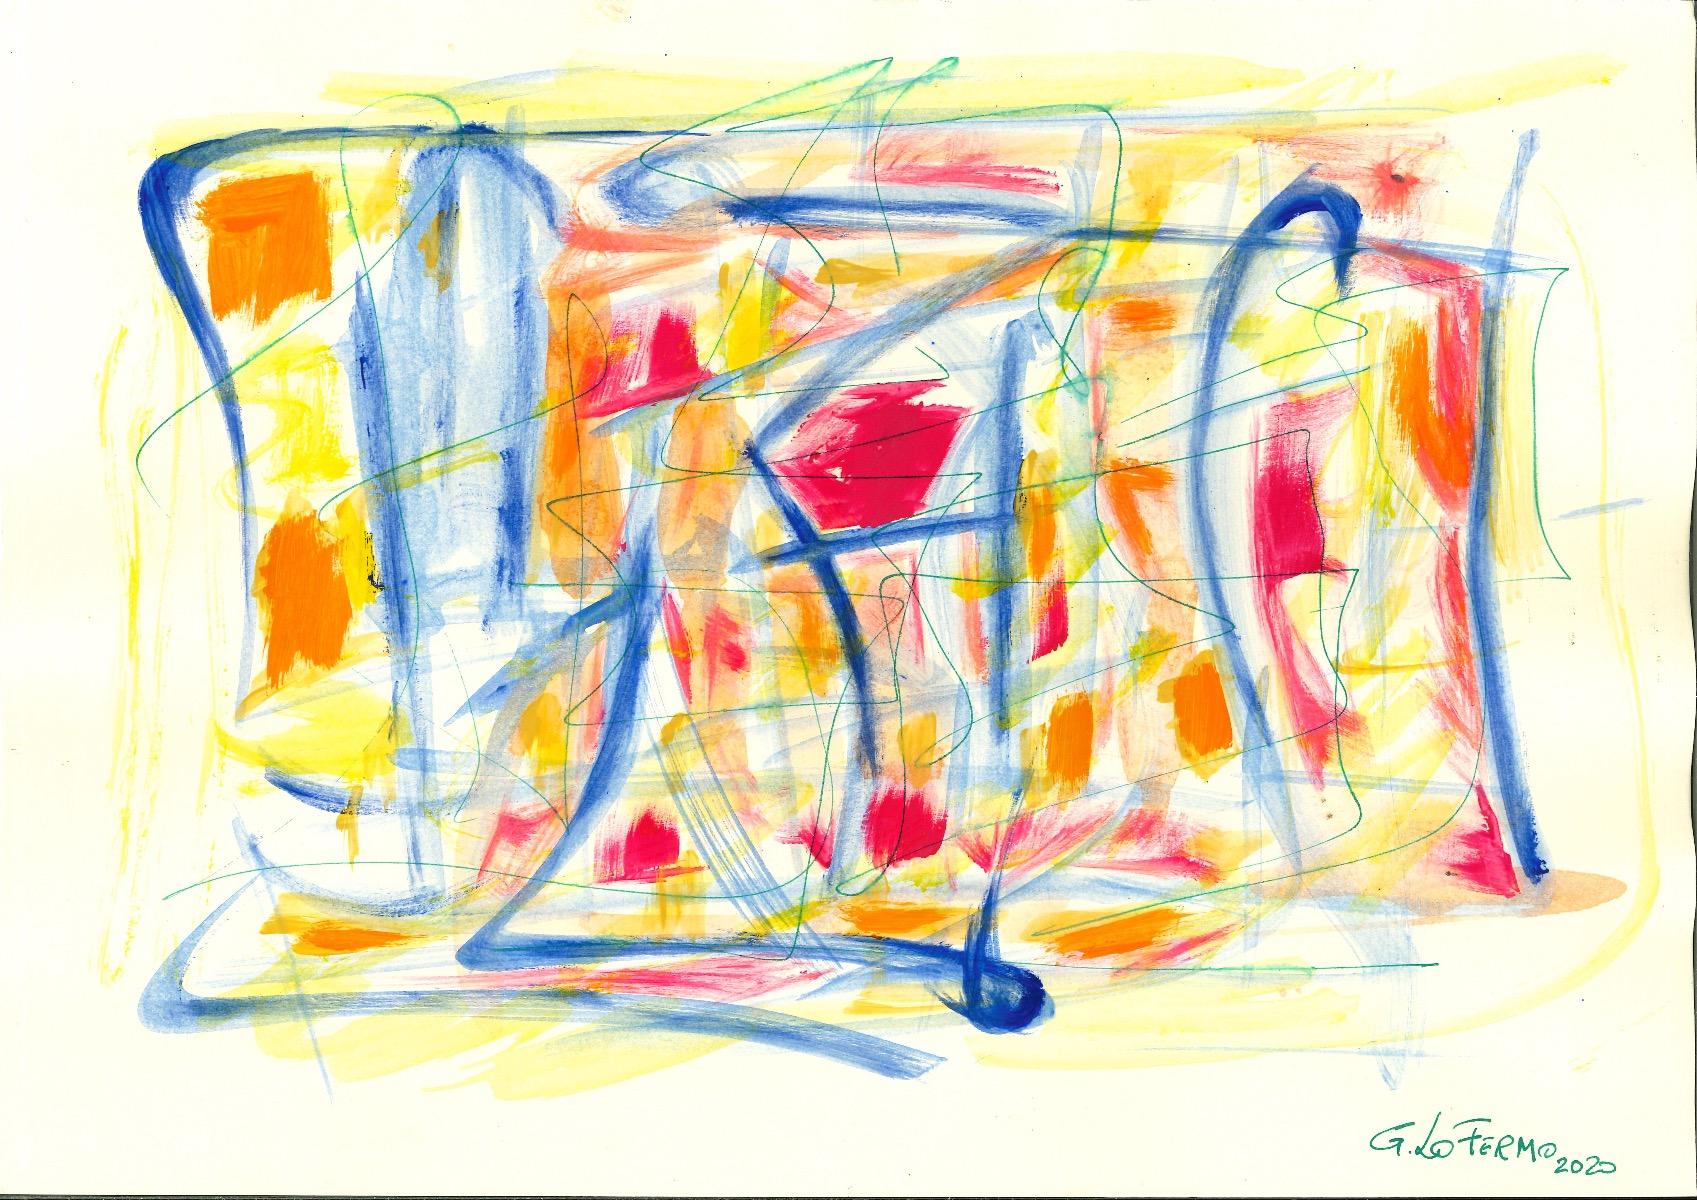 Colored Composition - Tempera and Watercolor by Giorgio Lo Fermo - 2020